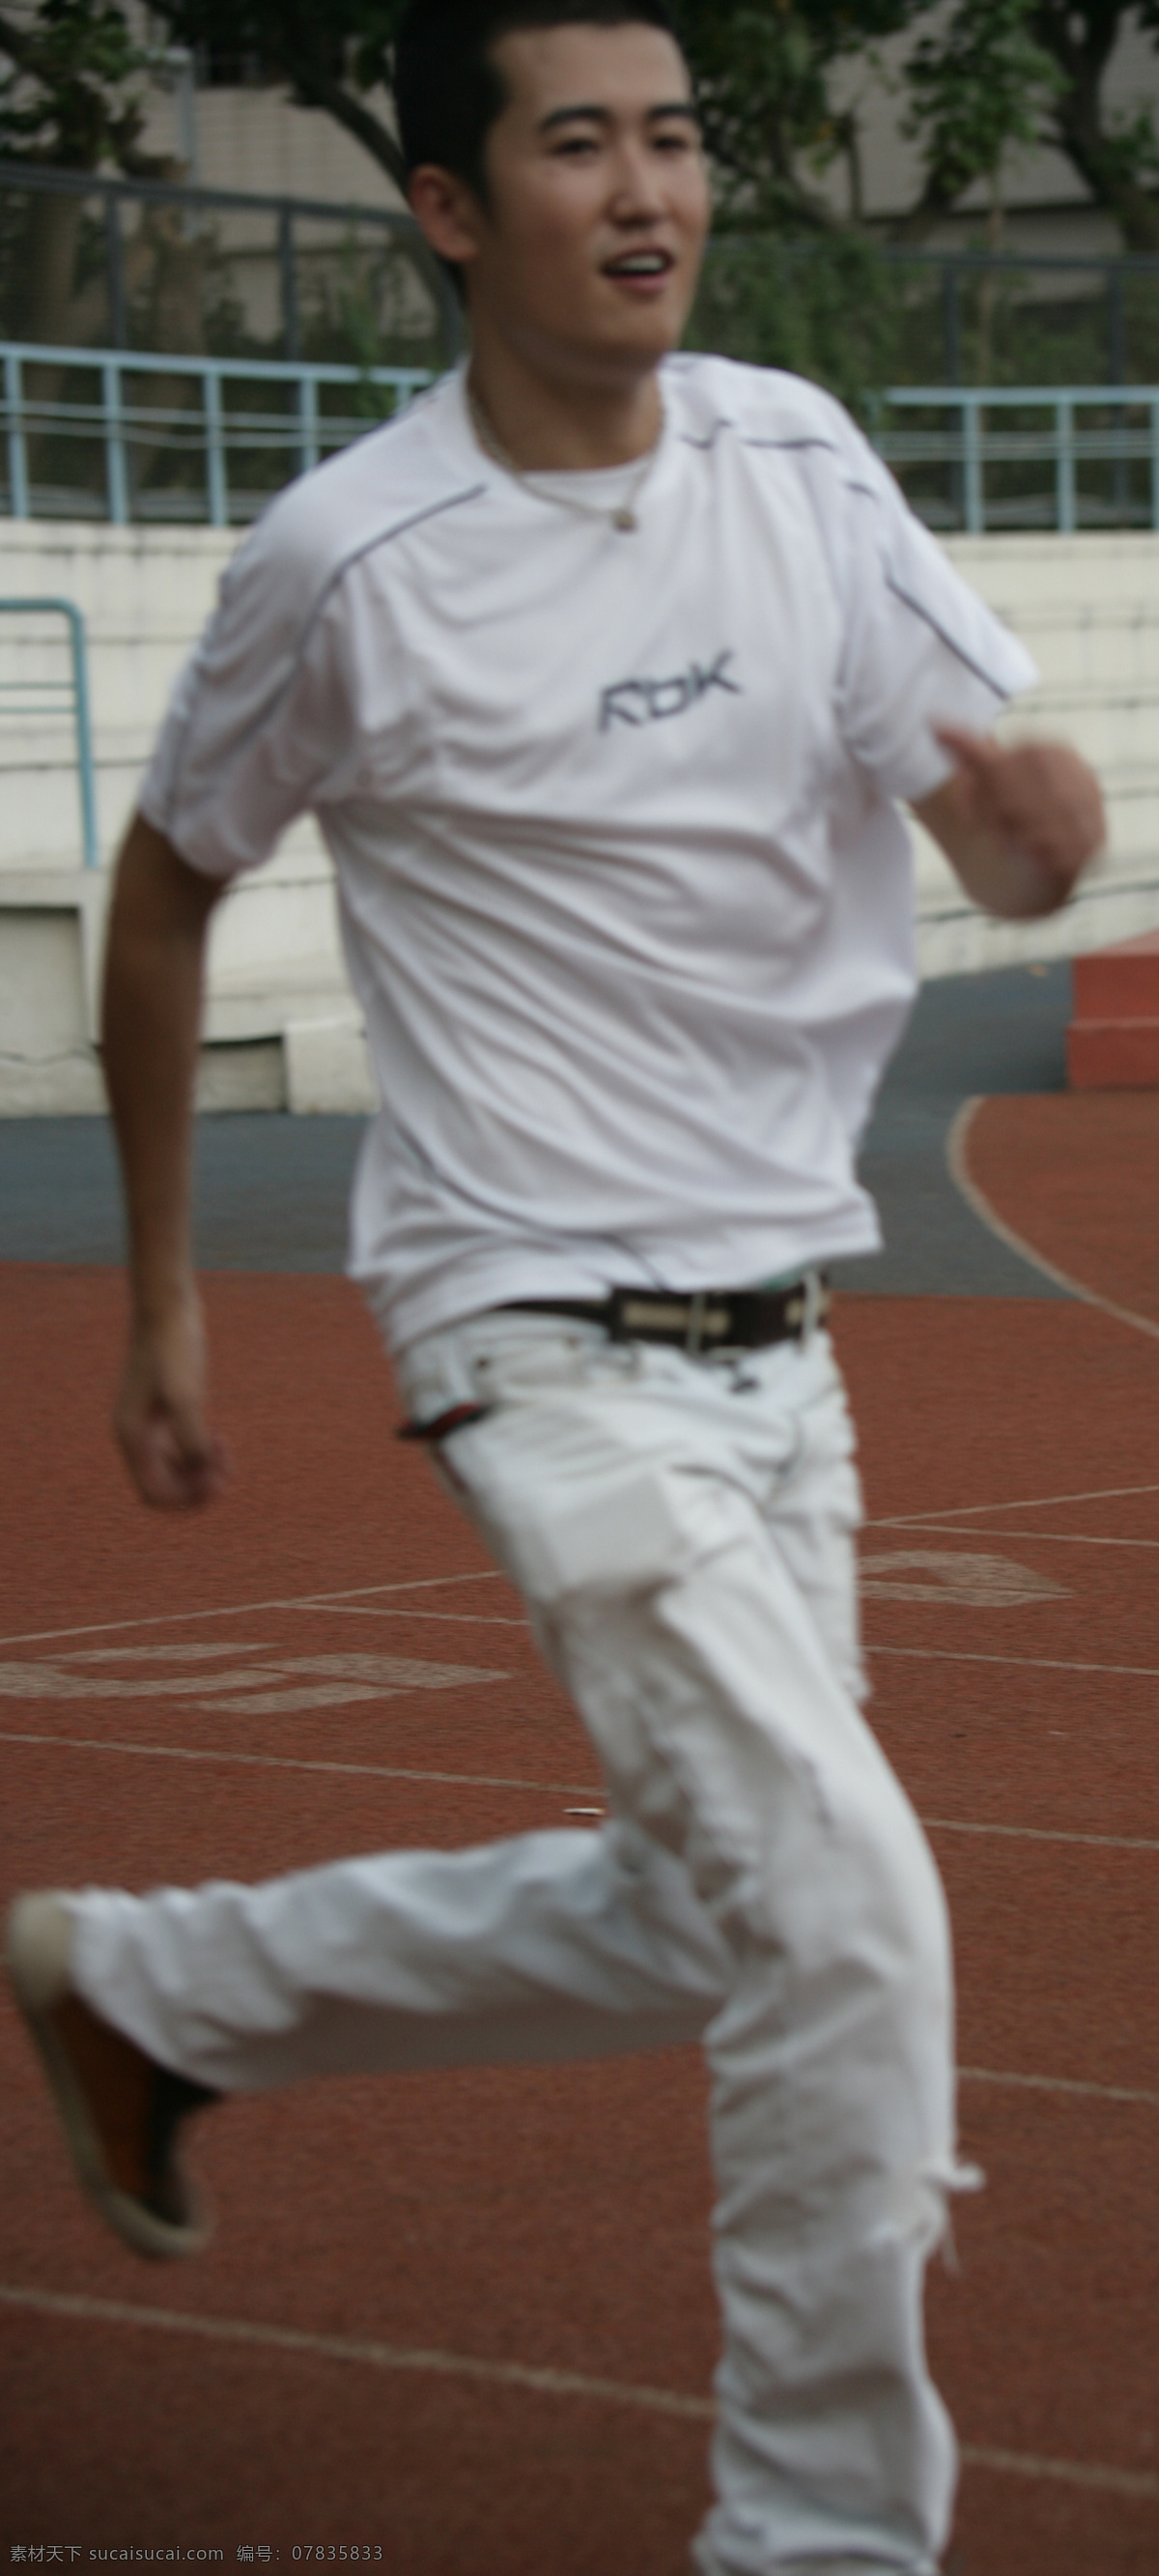 模特 运动场地 白色运动装 运动鞋 韩国帅哥 跑步 人物图库 男性男人 摄影图库